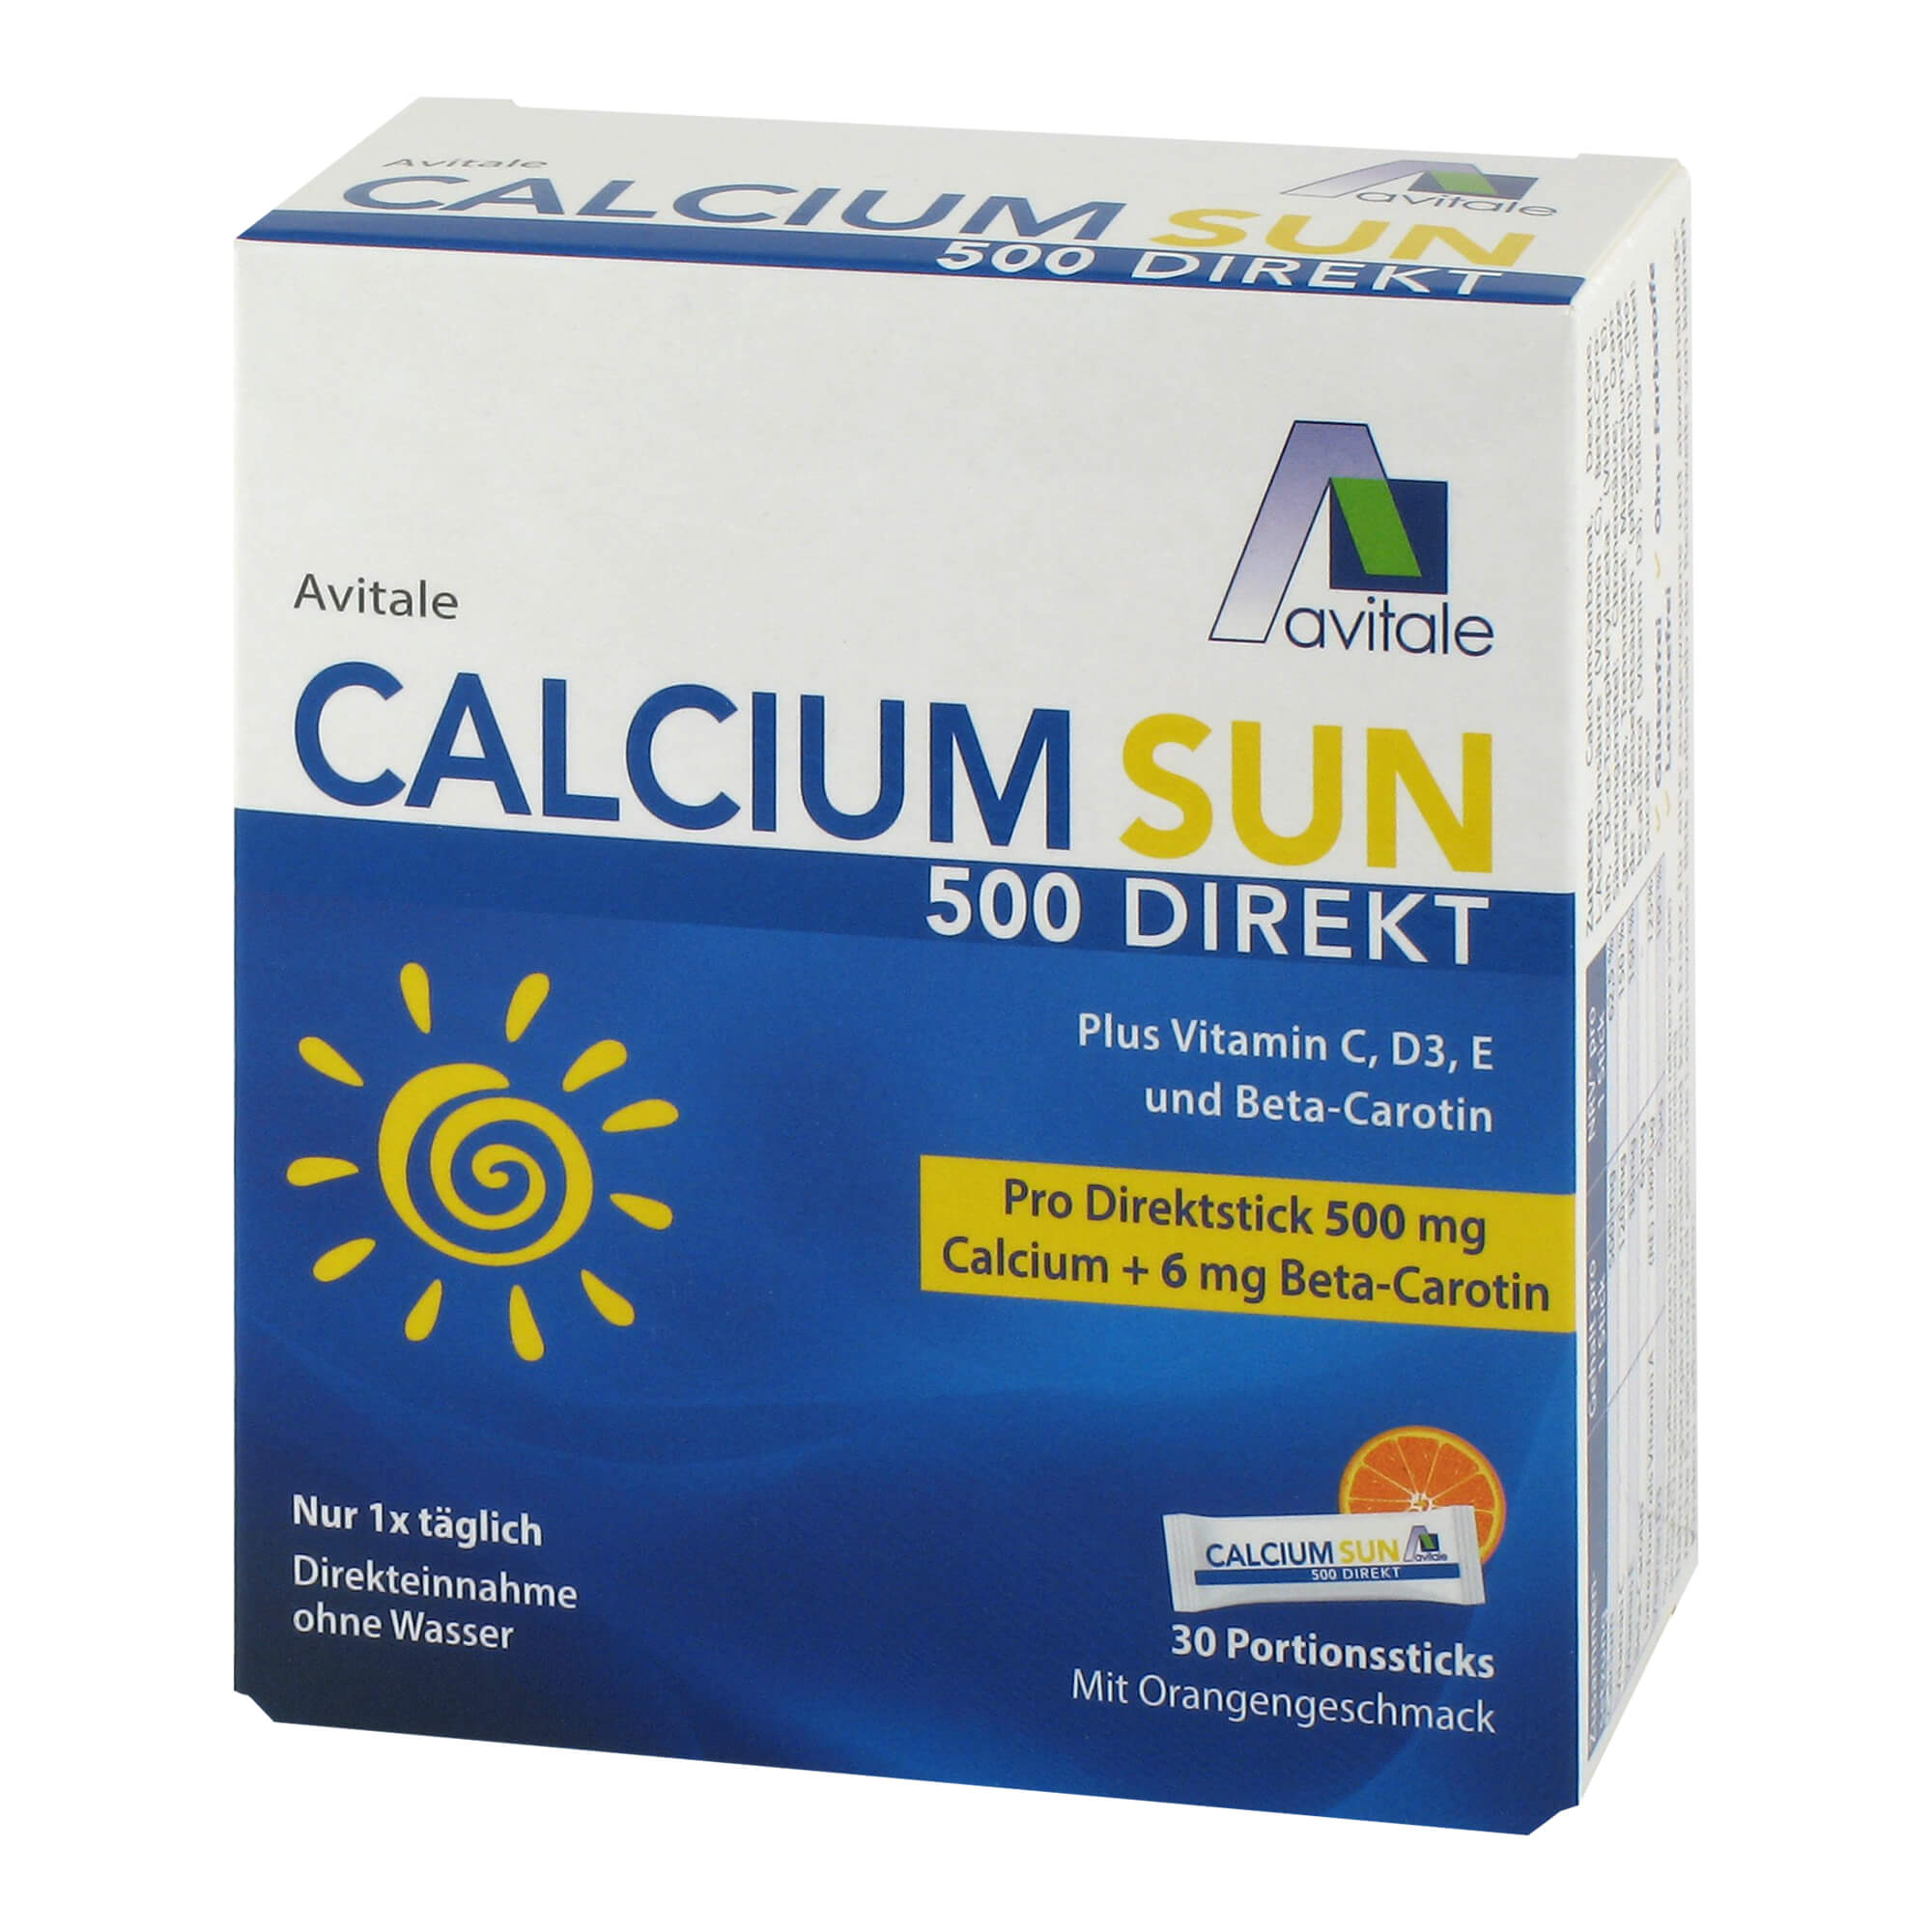 Nahrungsergänzung mit Calcium plus Vitamin C, D3, E und Beta-Carotin.